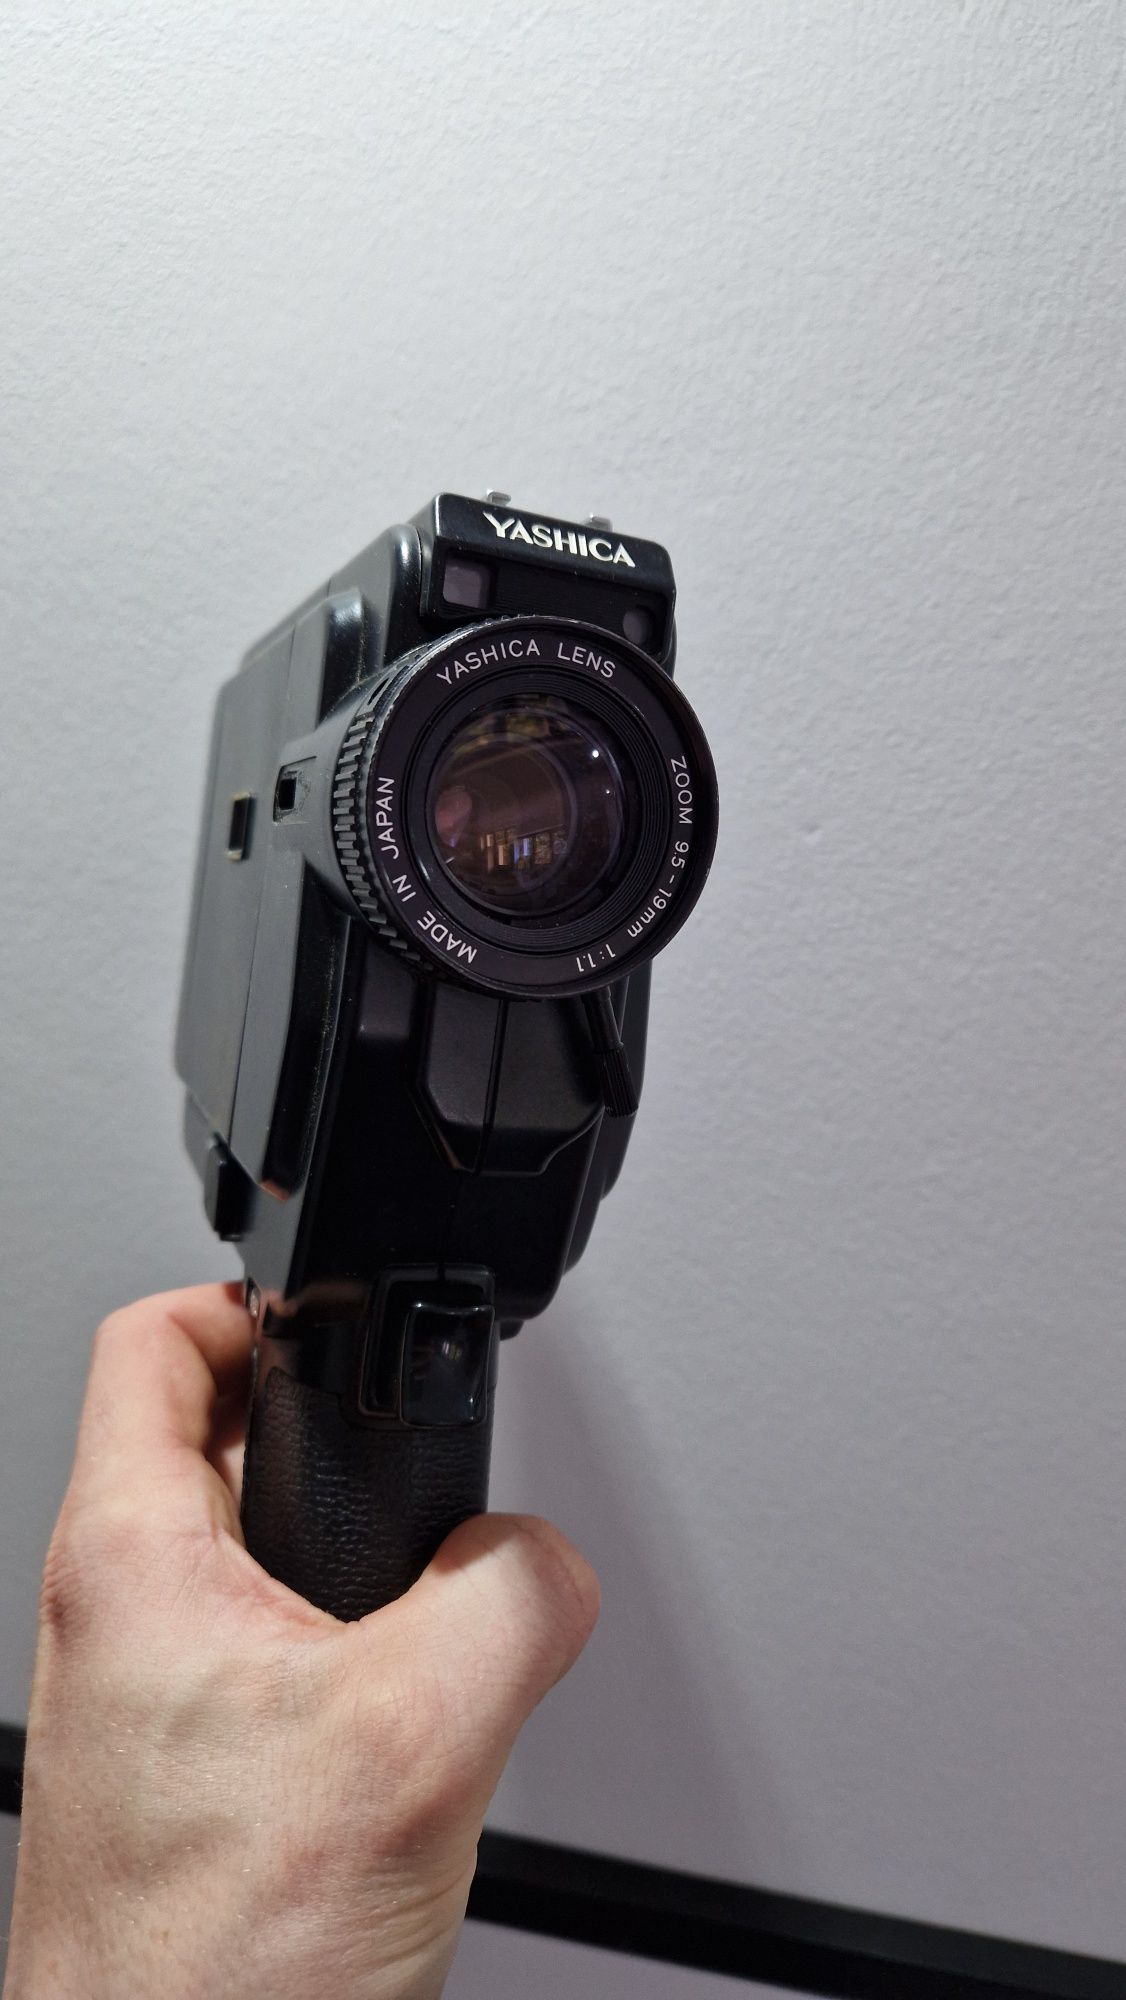 kamera analogowa Yashica Sound 20 XL Super 8mm